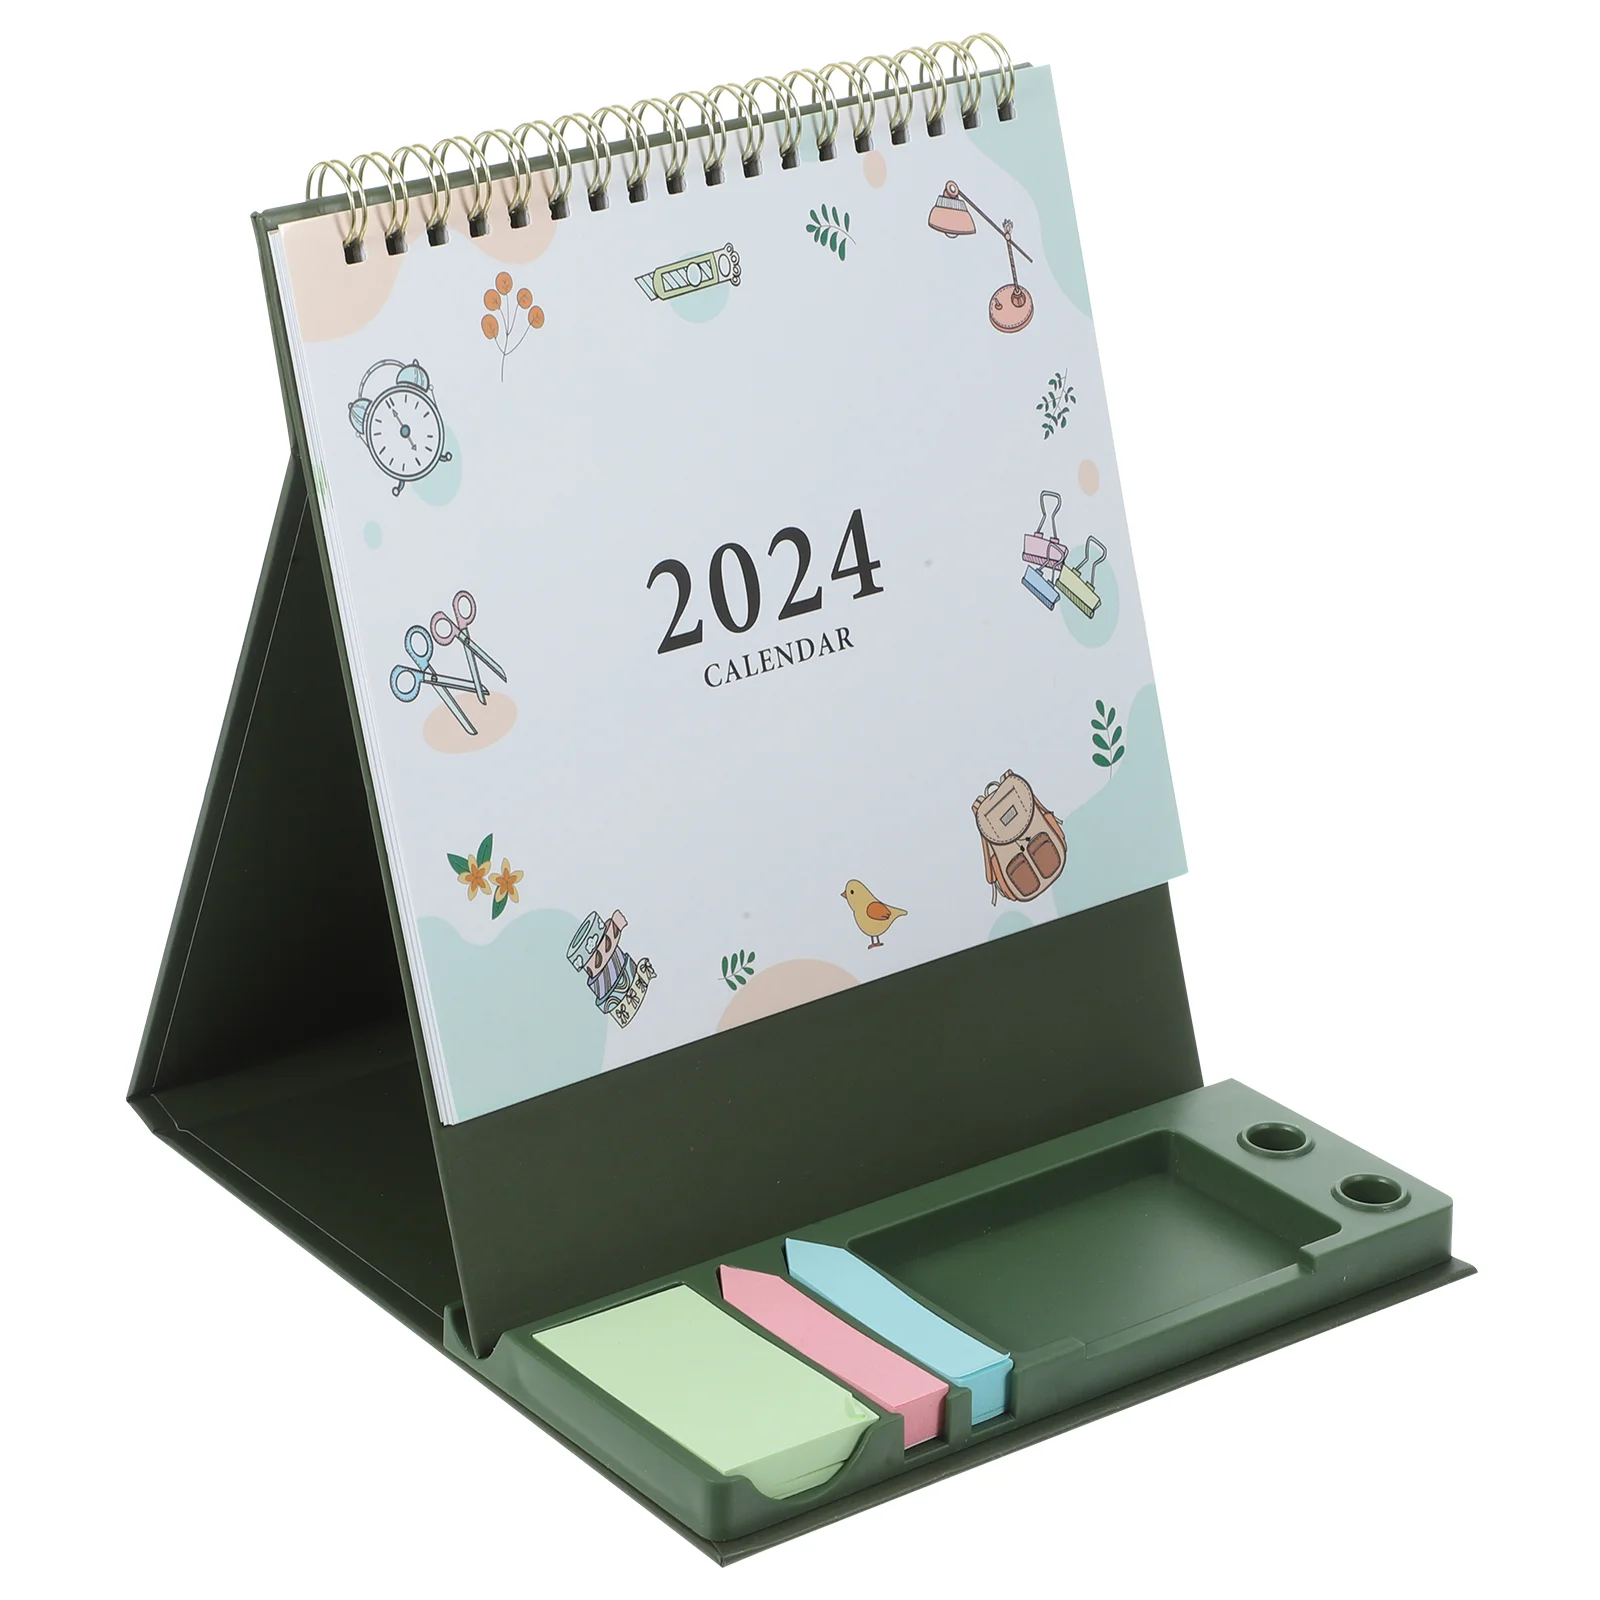 Creative Simple Desk Calendar 2024 Tri-fold Desktop Ornament Countdown Check-in Planner Storage Box Office Decor Table Paper